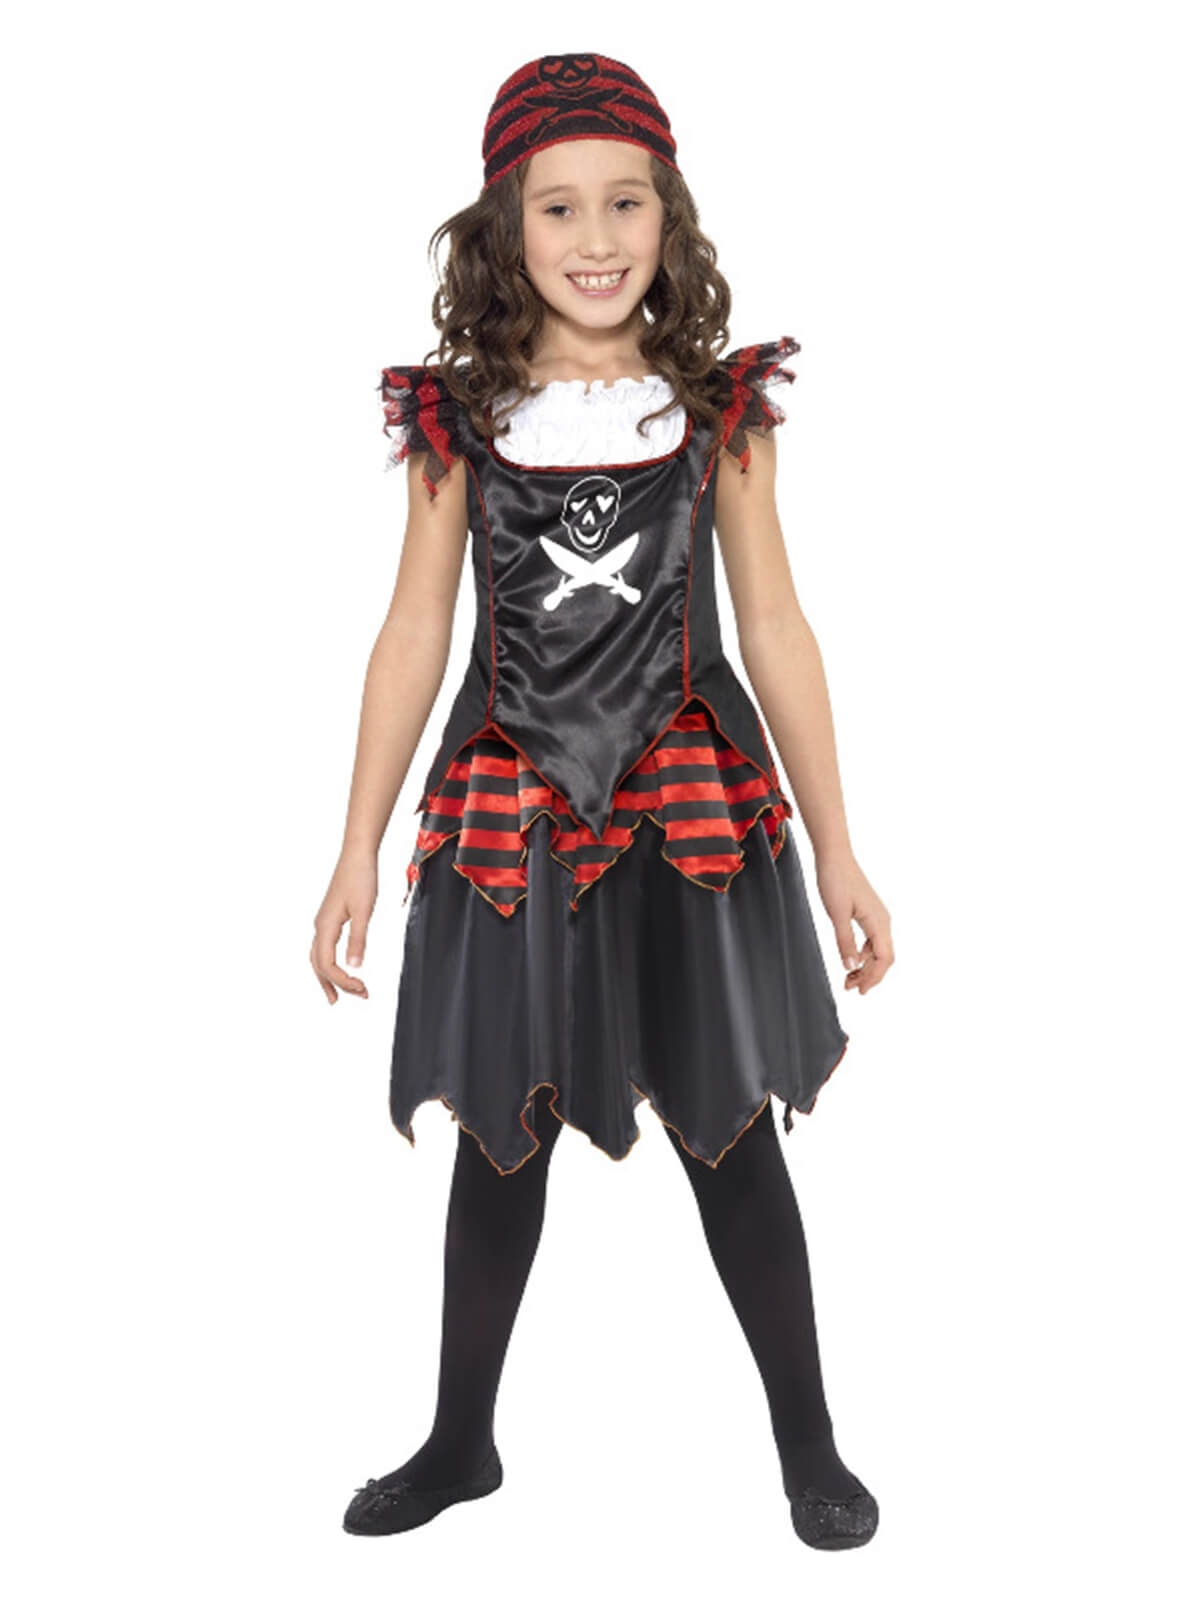 Pirate Skull & Crossbones Girl Costume, Black